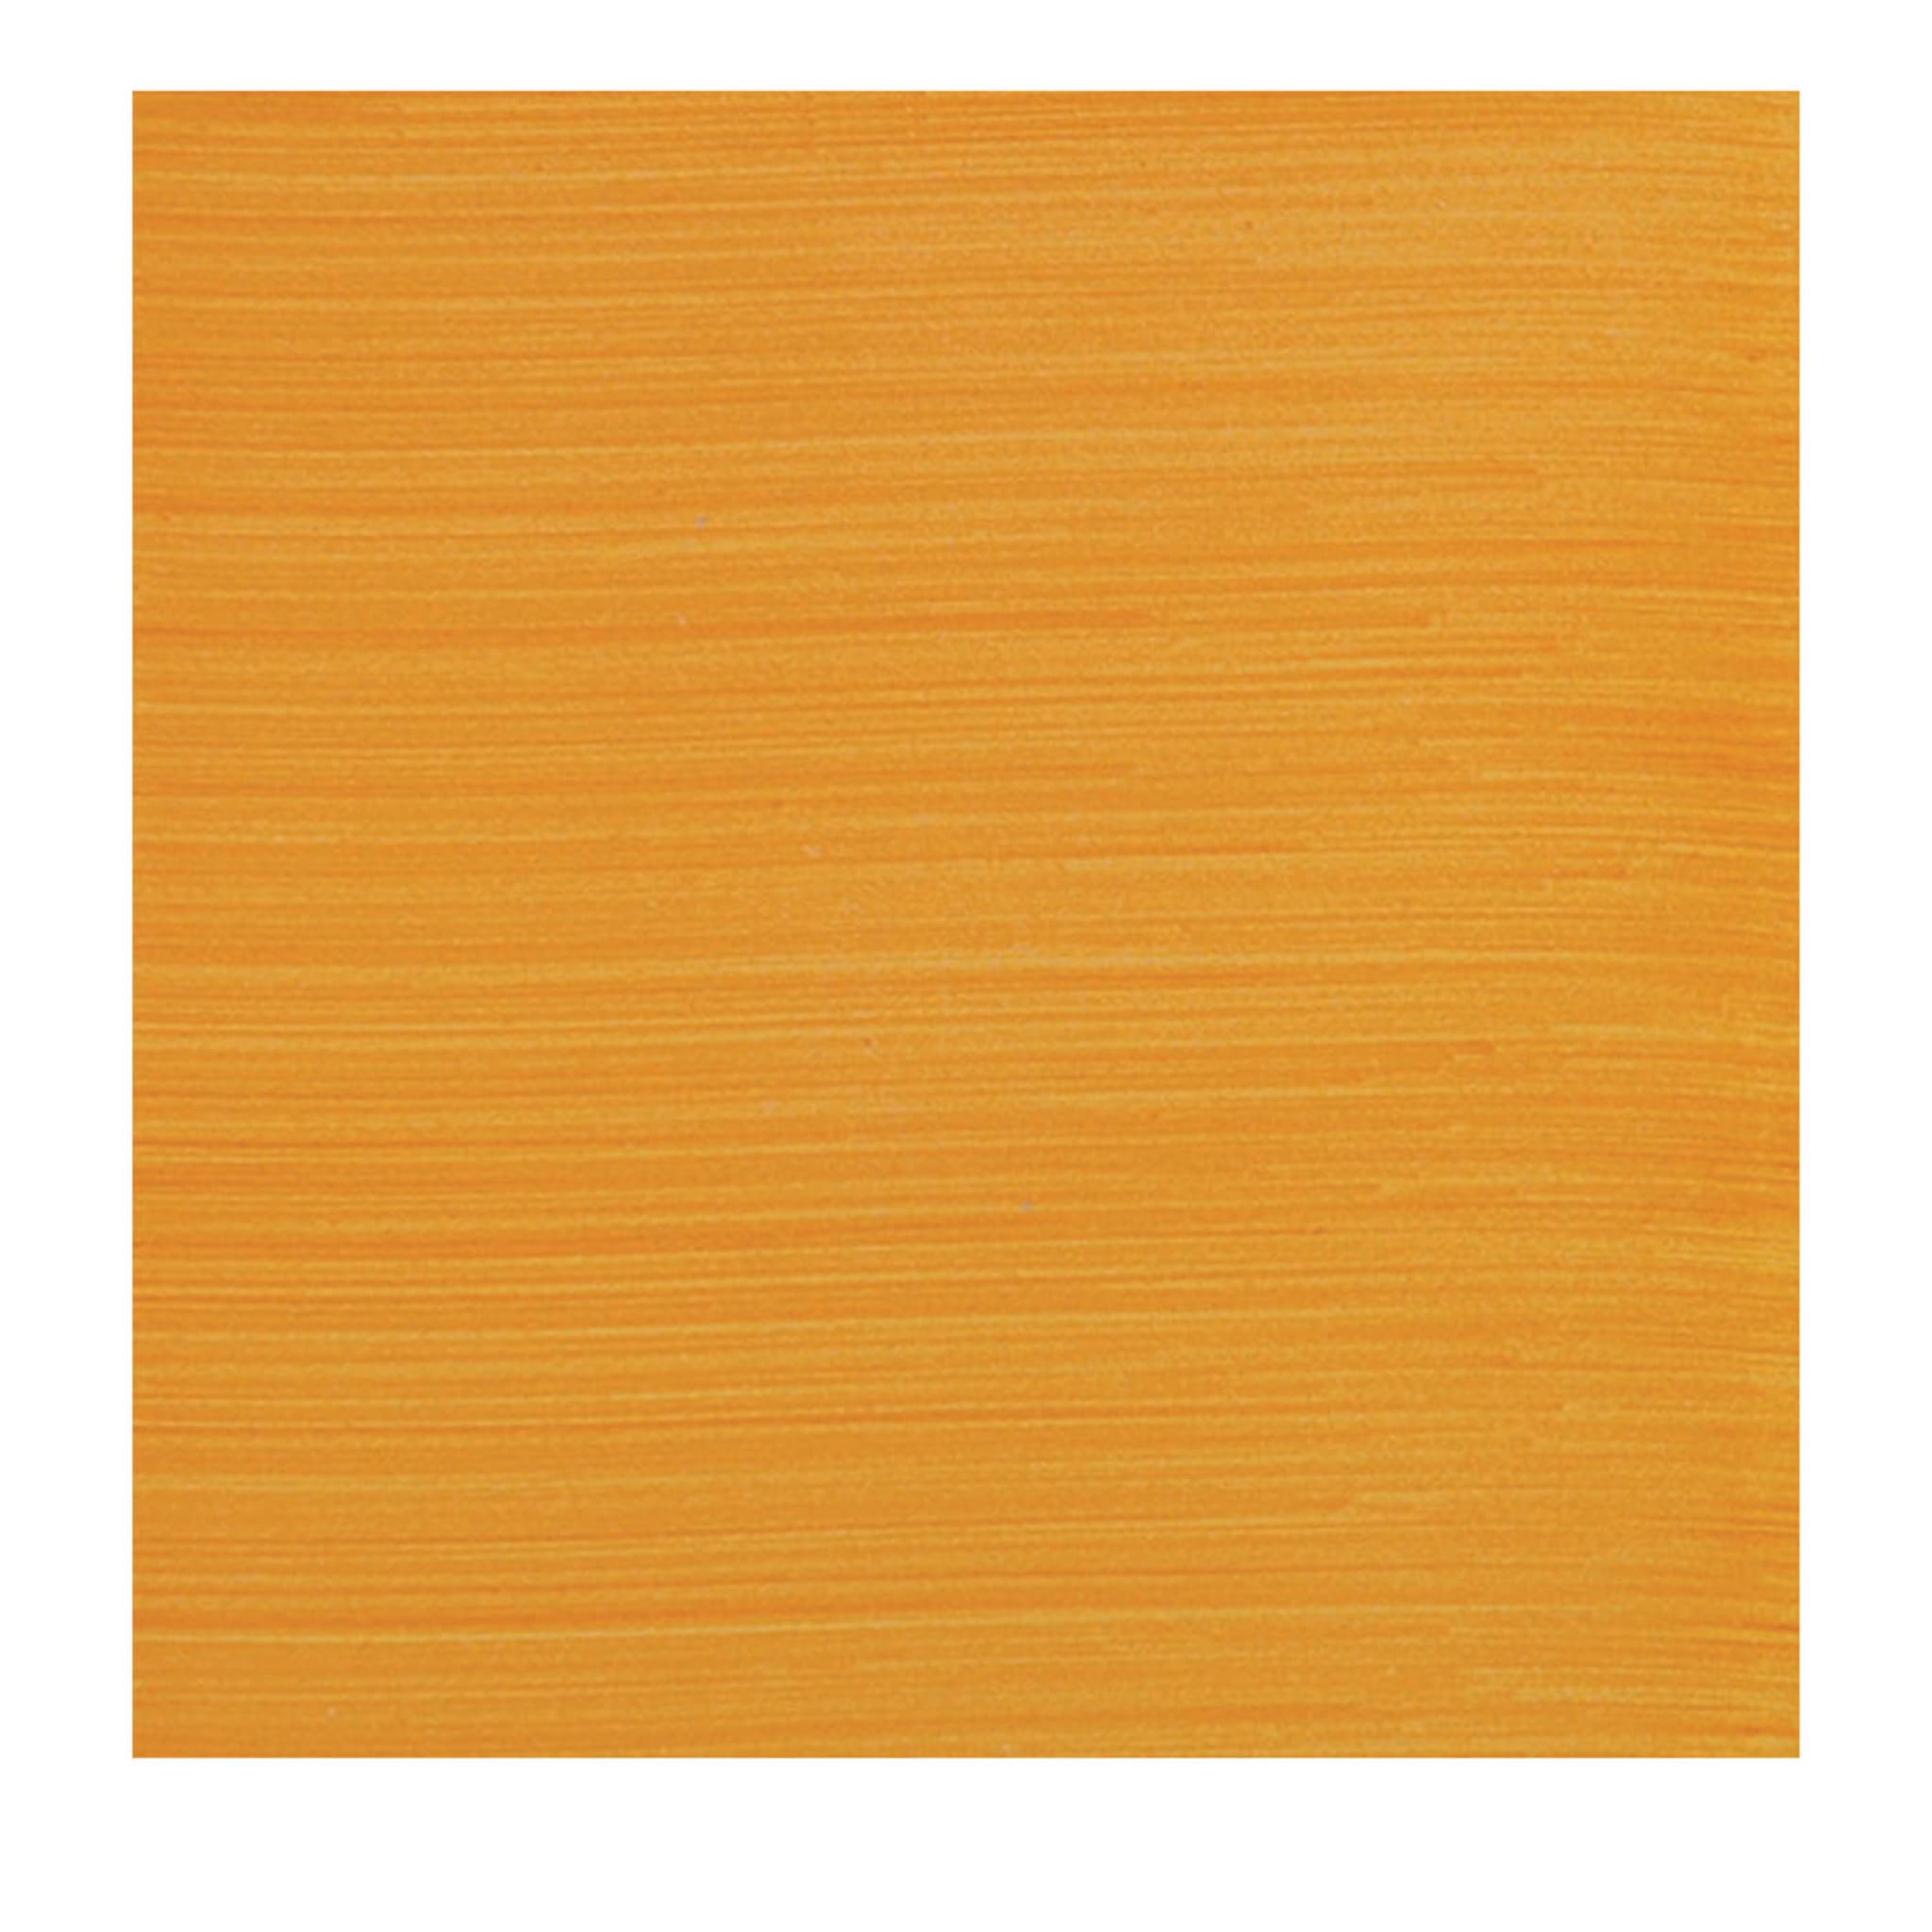 Cromie Color C40 Set of 25 Square Tiles - Main view